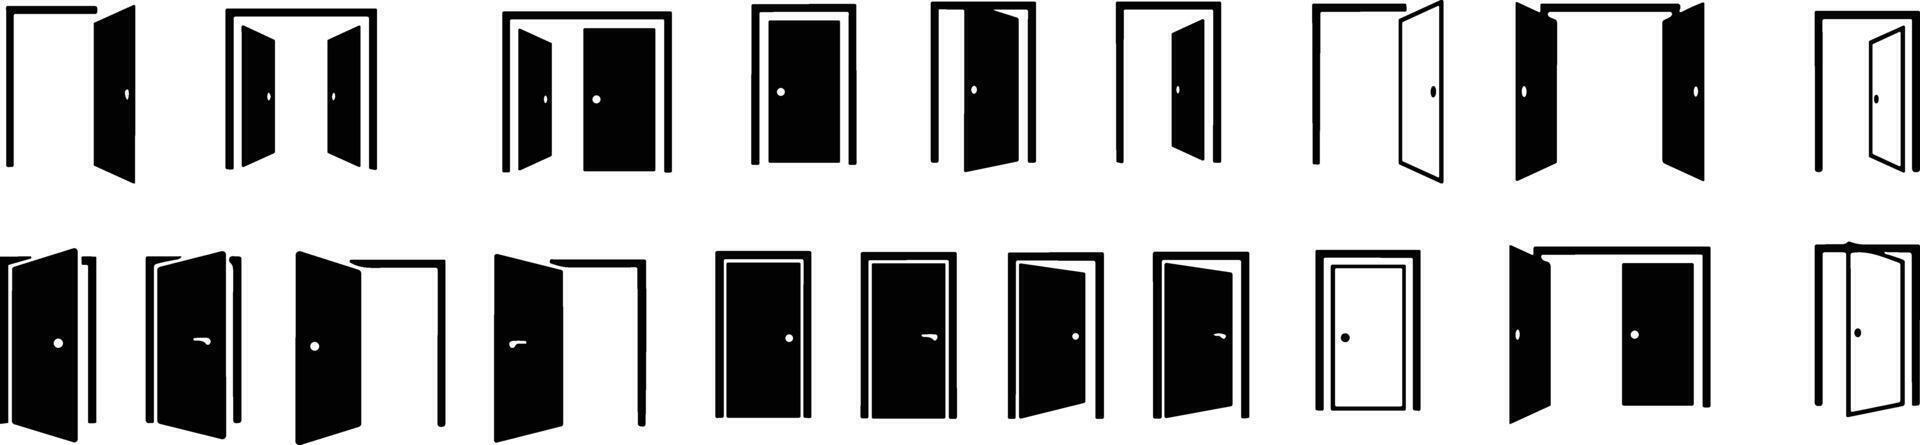 Open en Gesloten deur, Ingang realistisch deuropening pictogrammen symbool set. kunst ontwerp zwart deuren sjabloon verzameling. abstract concept grafisch open, dichtbij huis element. voorraad vector